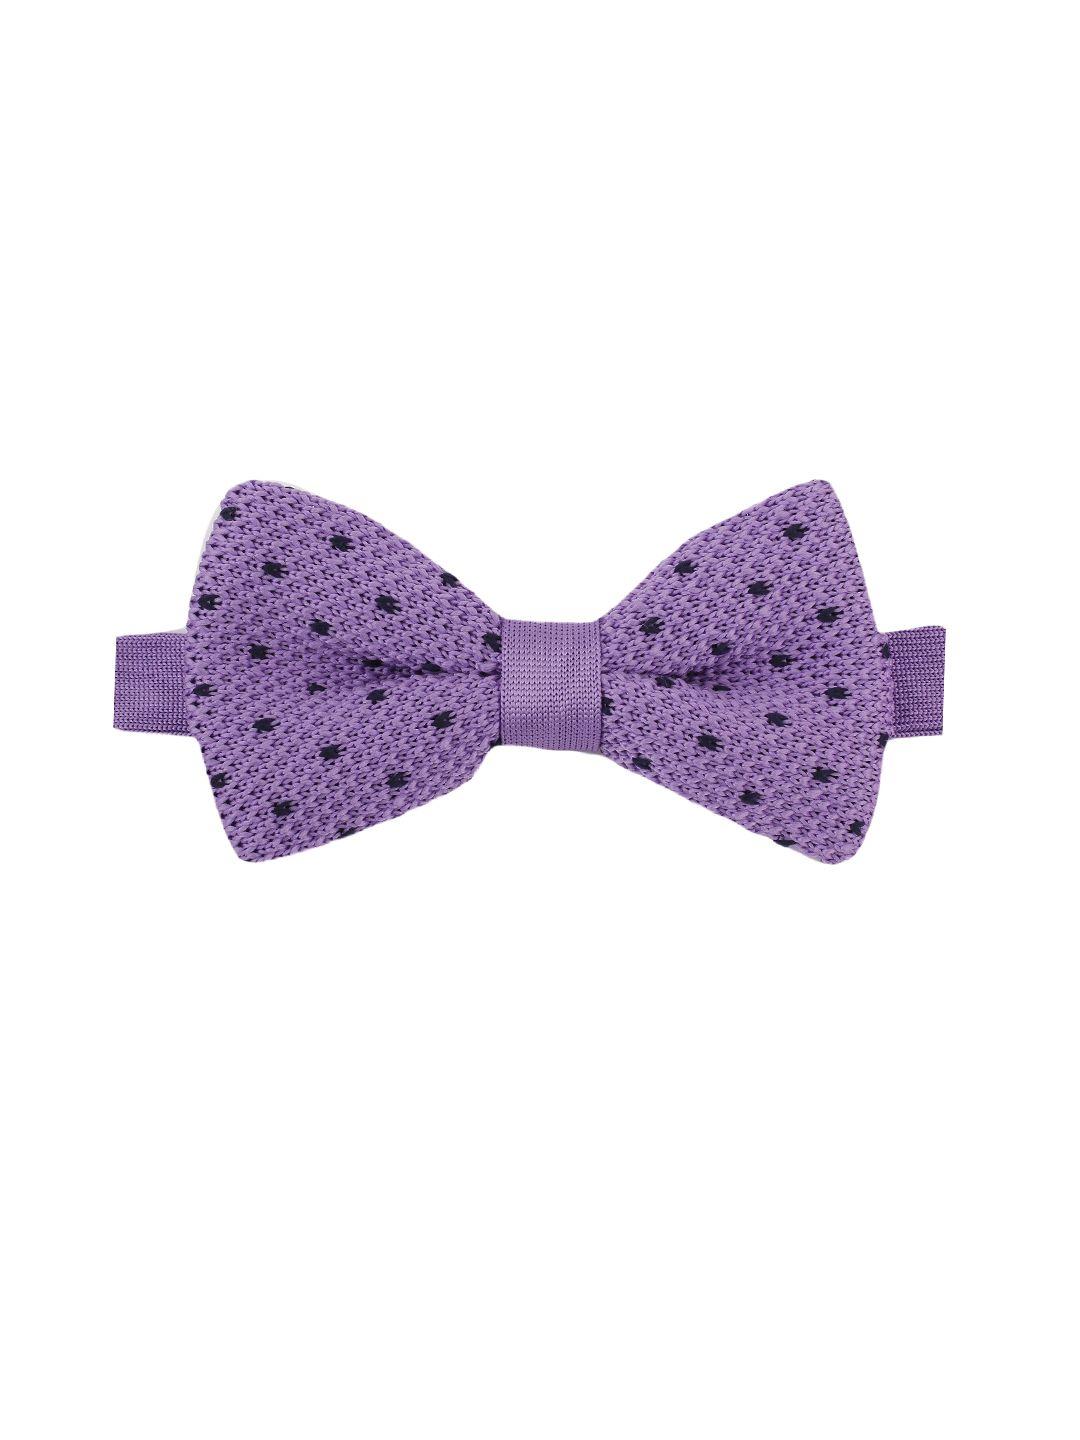 alvaro castagnino purple bow tie